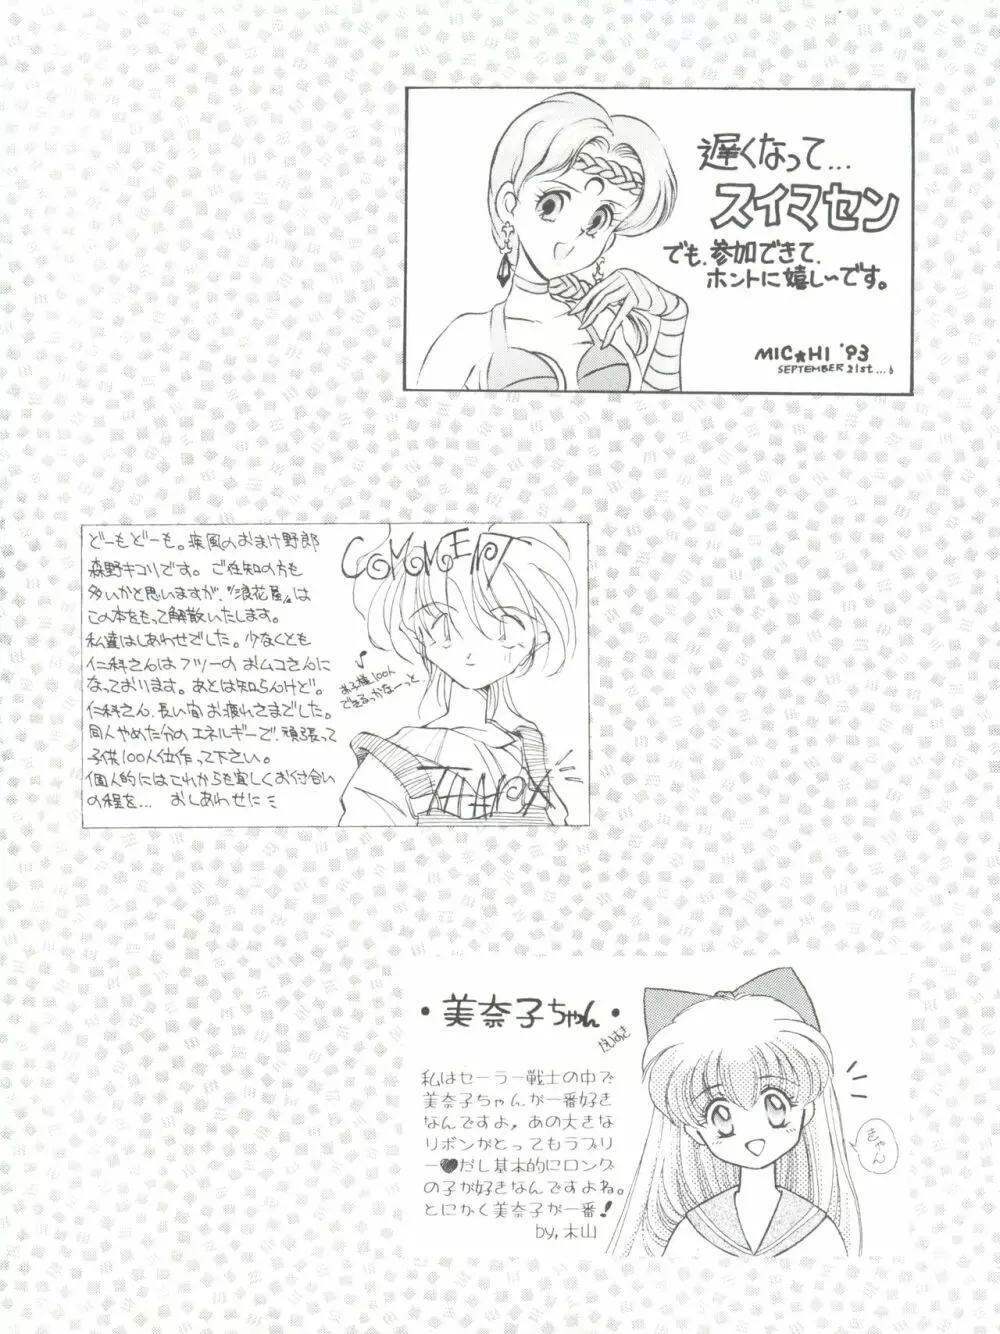 NANIWA-YA FINAL DRESS UP! - page109